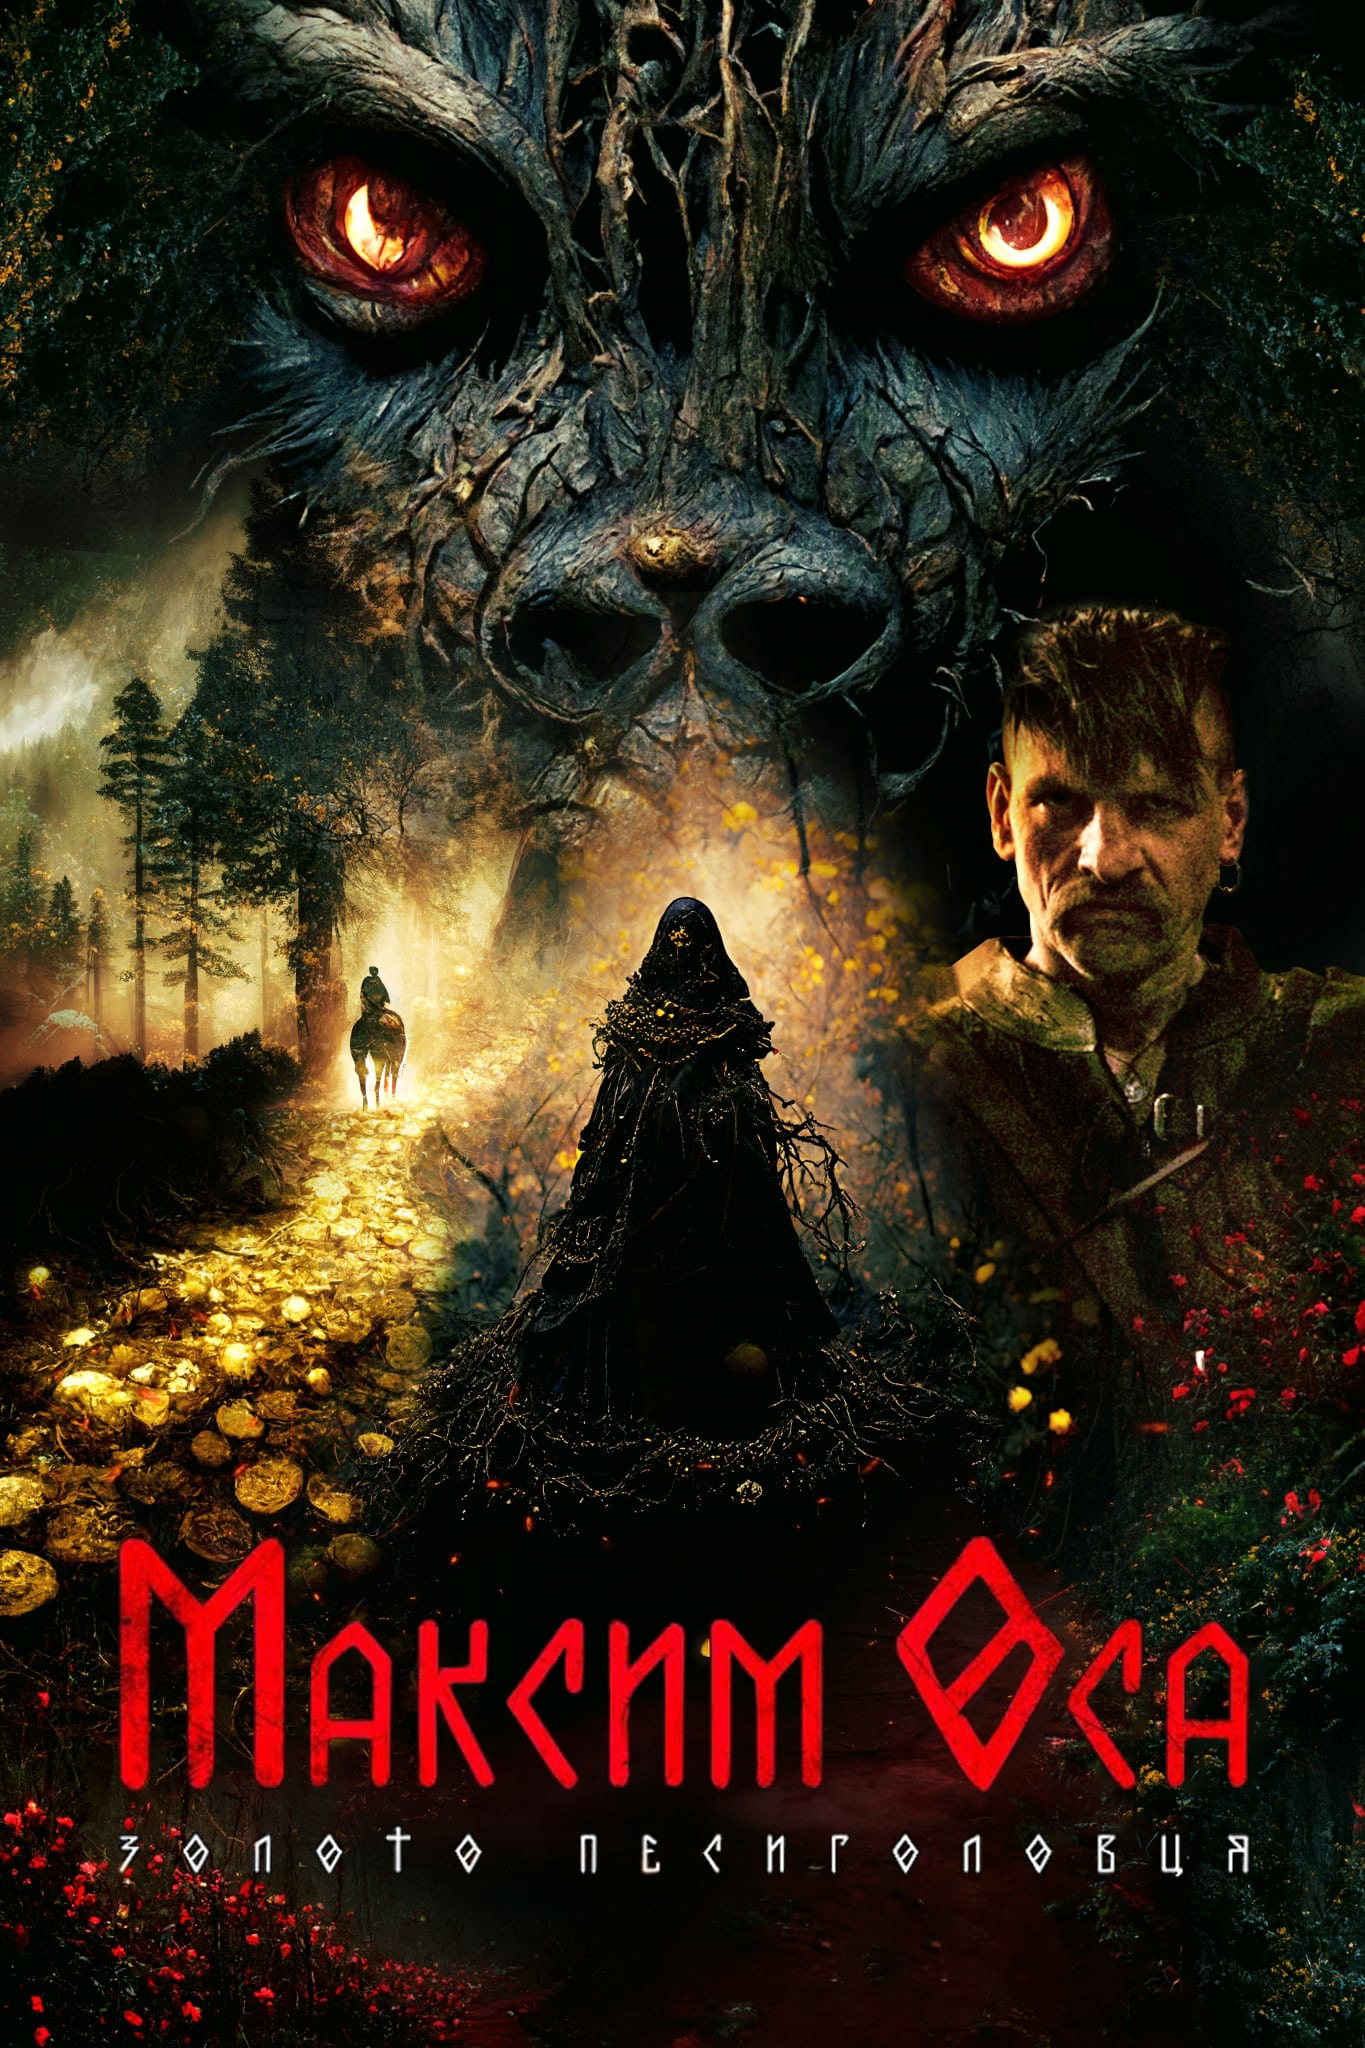 Максим Оса: Золото Песиголовця - Maksym Osa: The Gold of Werewolf